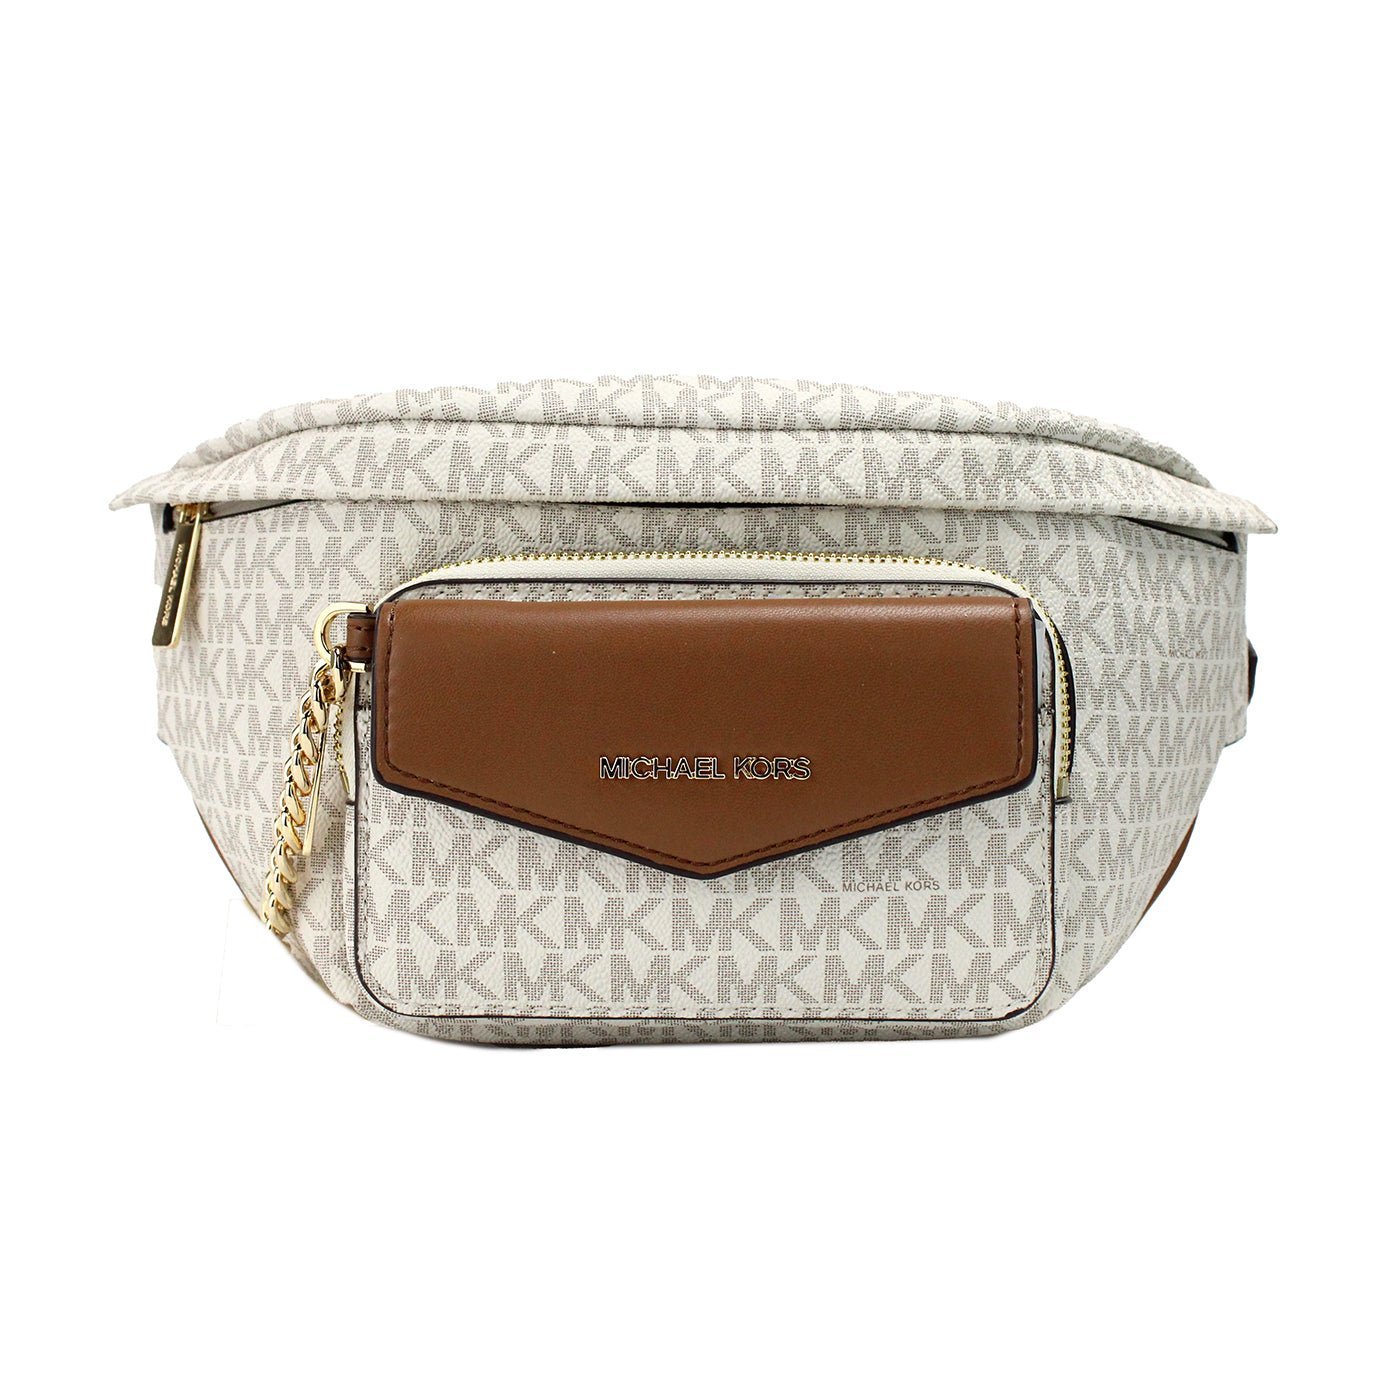 Fashionsarah.com Fashionsarah.com Michael Kors Maisie Large Vanilla PVC 2-n-1 Waistpack Card Case Fanny Pack Bag